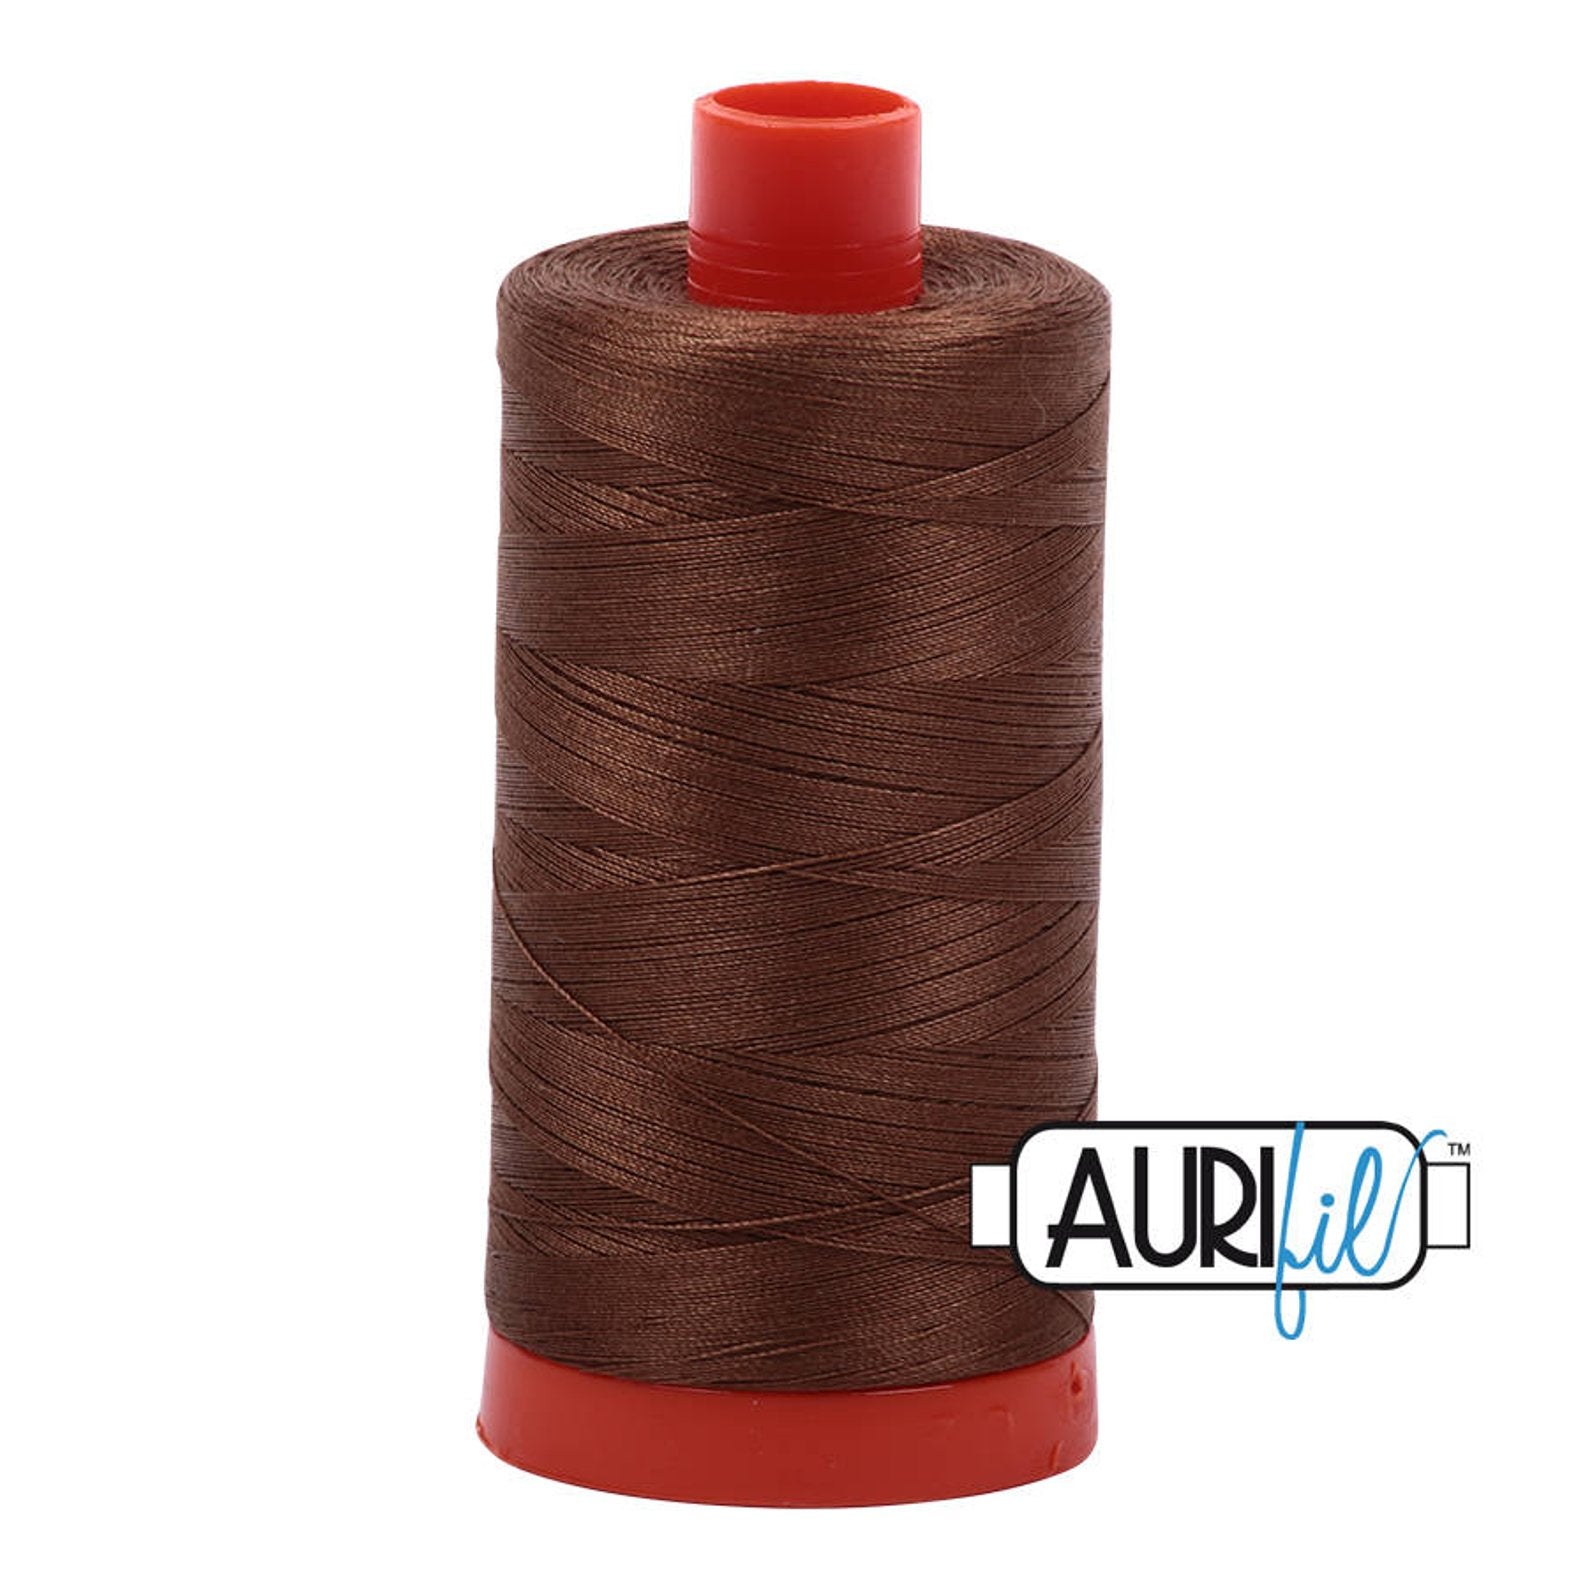 Aurifil 50 wt cotton thread, 1300m, Dark Antique Gold (2372)